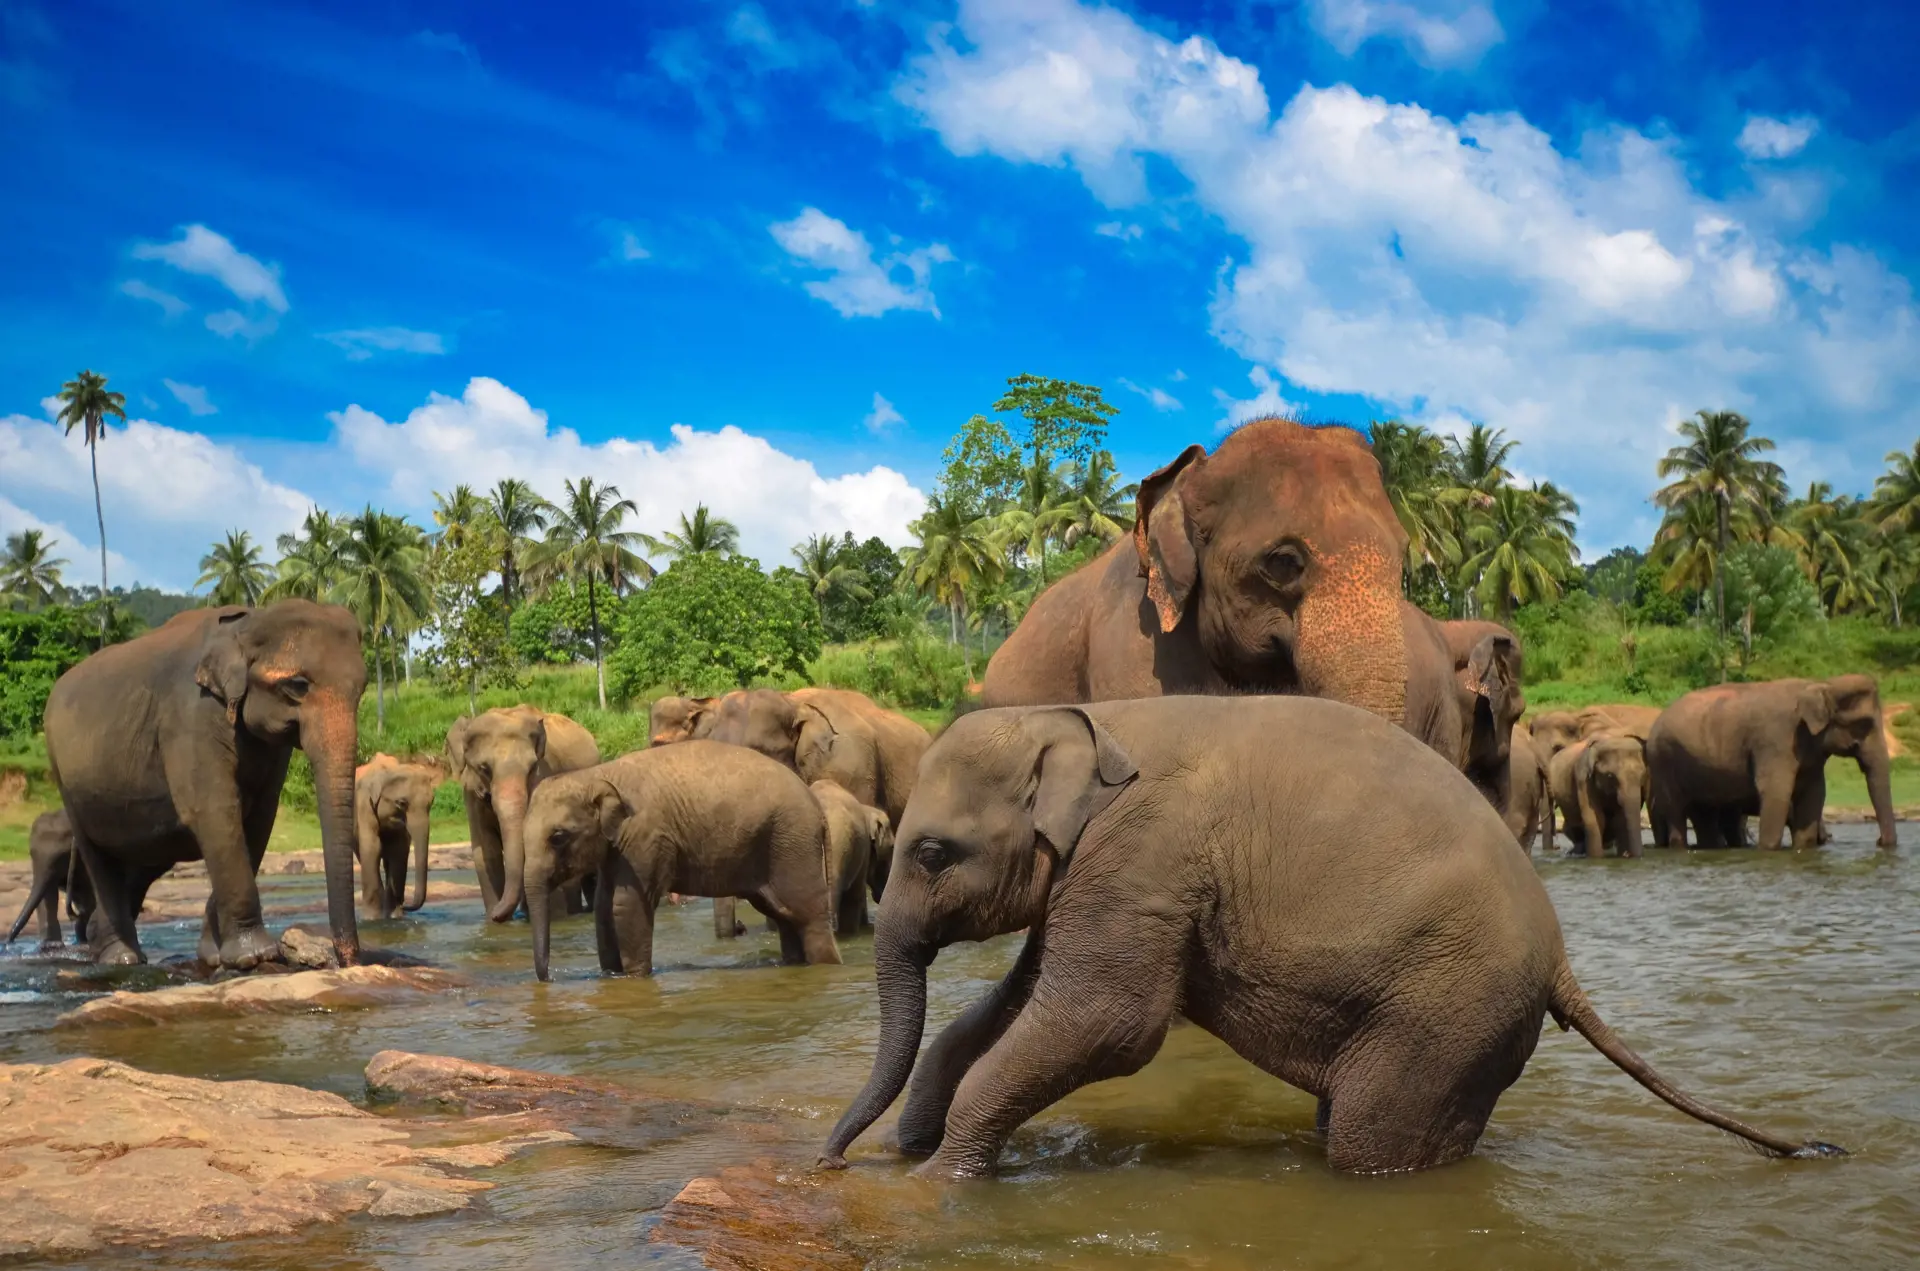 NATUR - over det meste af Sri Lanka vil det være muligt at opleve den asiatiske elefant, Check Point Travel